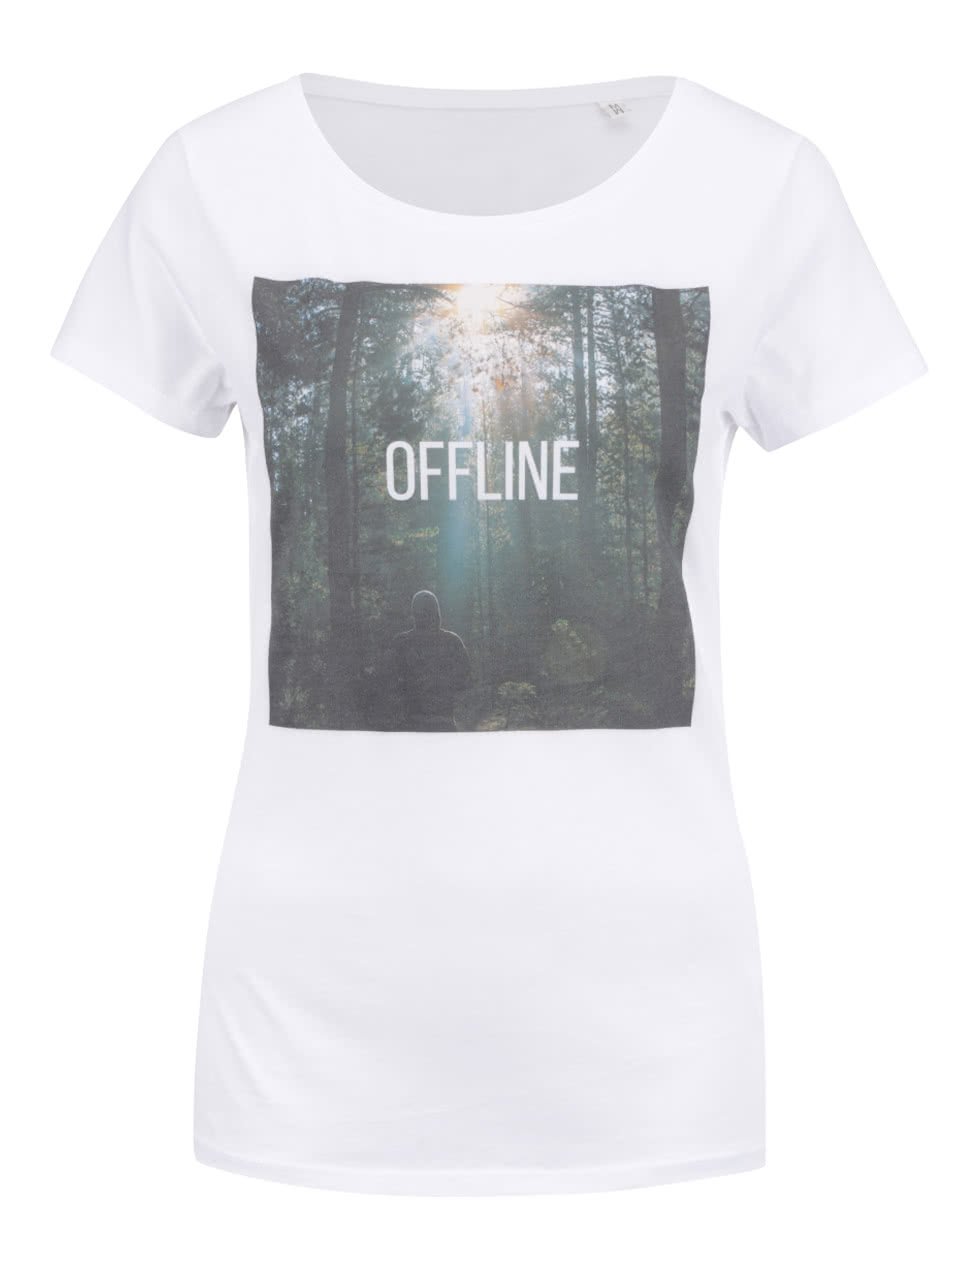 Bílé dámské tričko ZOOT Original Offline